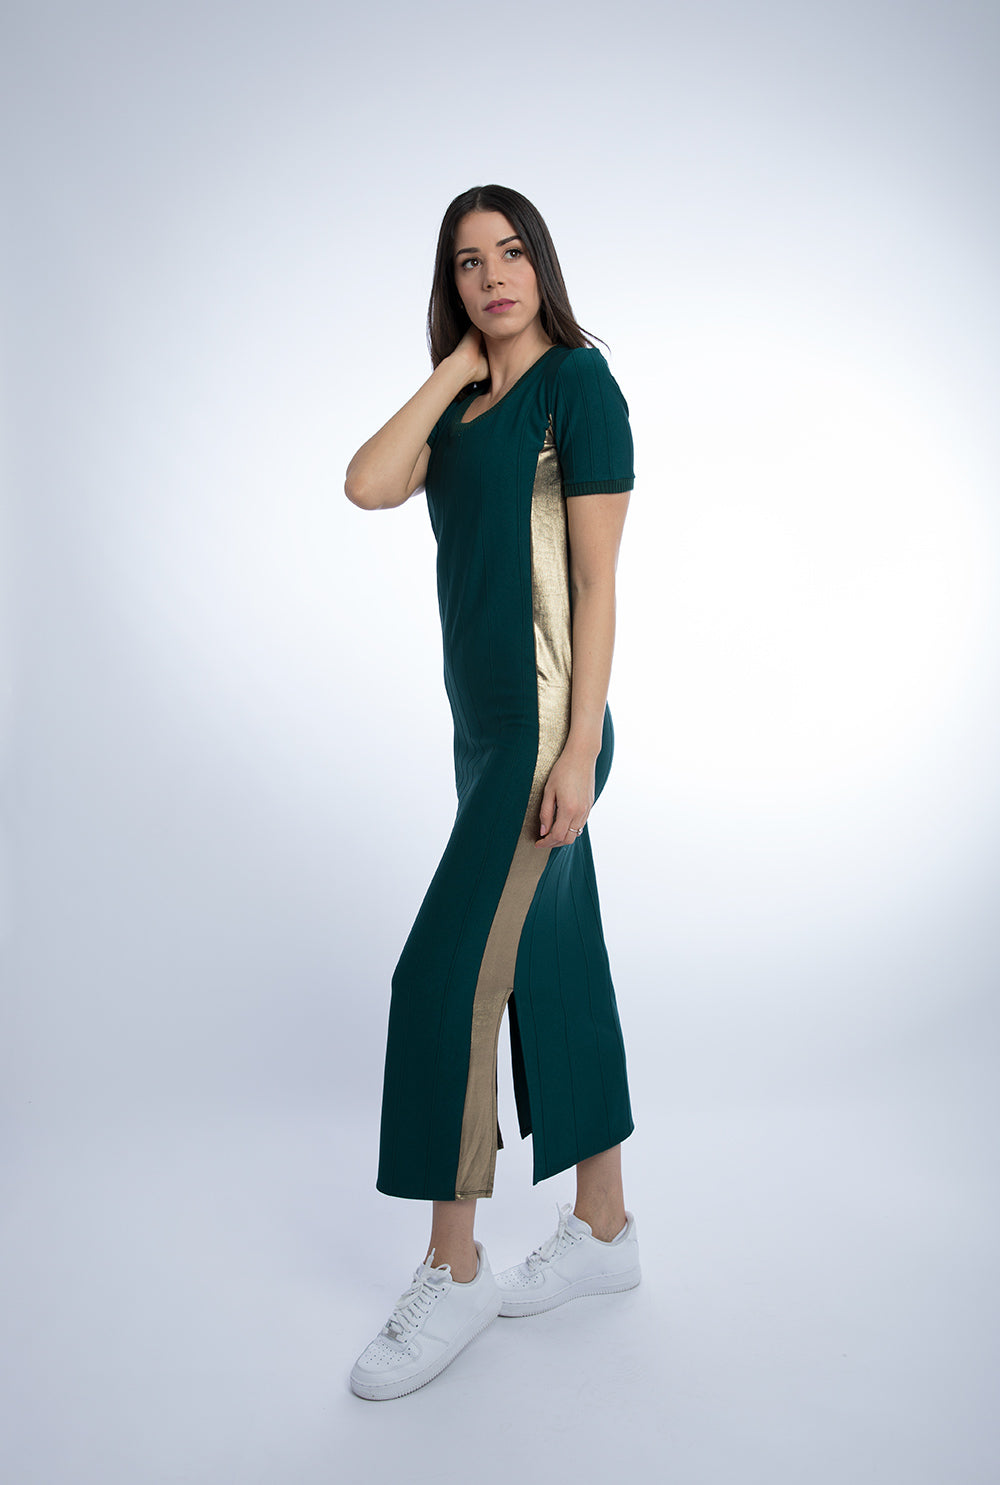 Raquel Studio Dress Emerald Green L